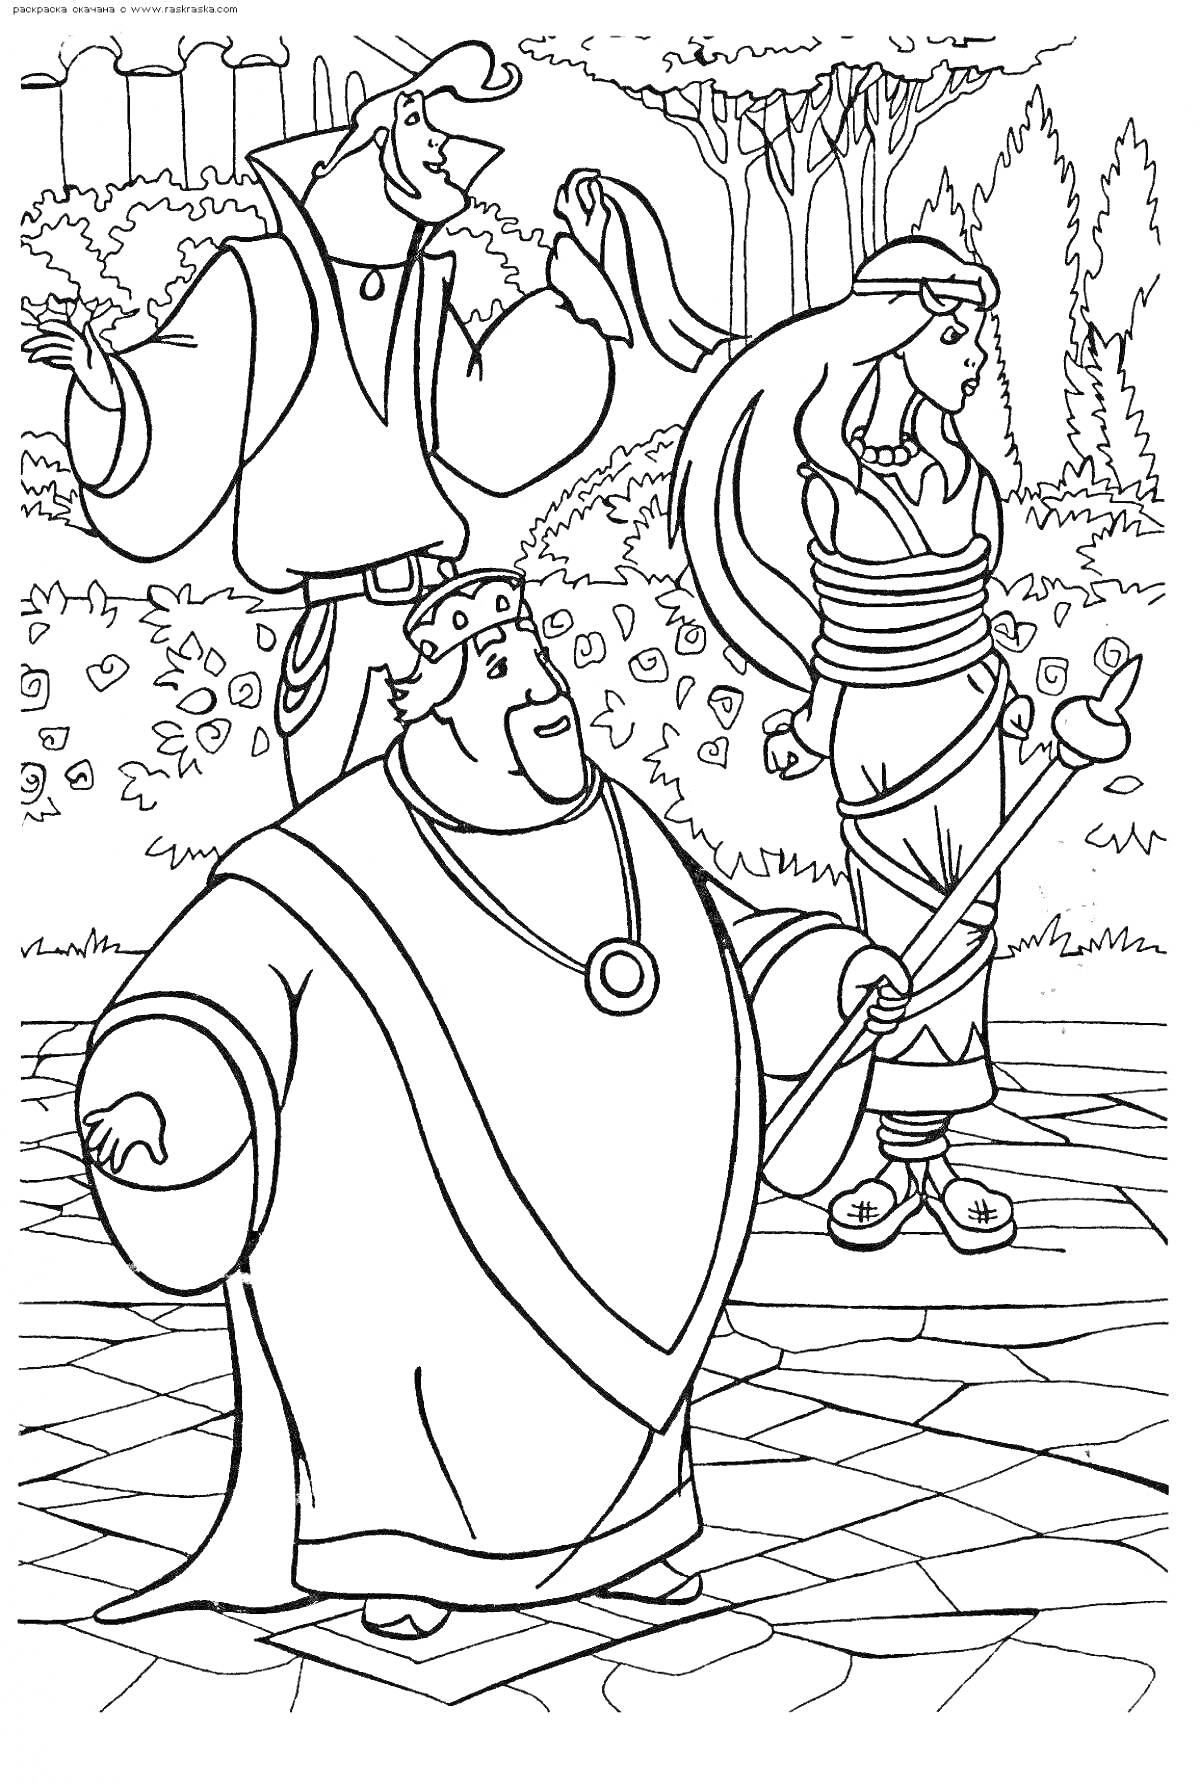 Раскраска Три персонажа на фоне деревьев и забора, один из которых король с жезлом, другой мужчина с поднятой рукой и женщина в длинном платье.